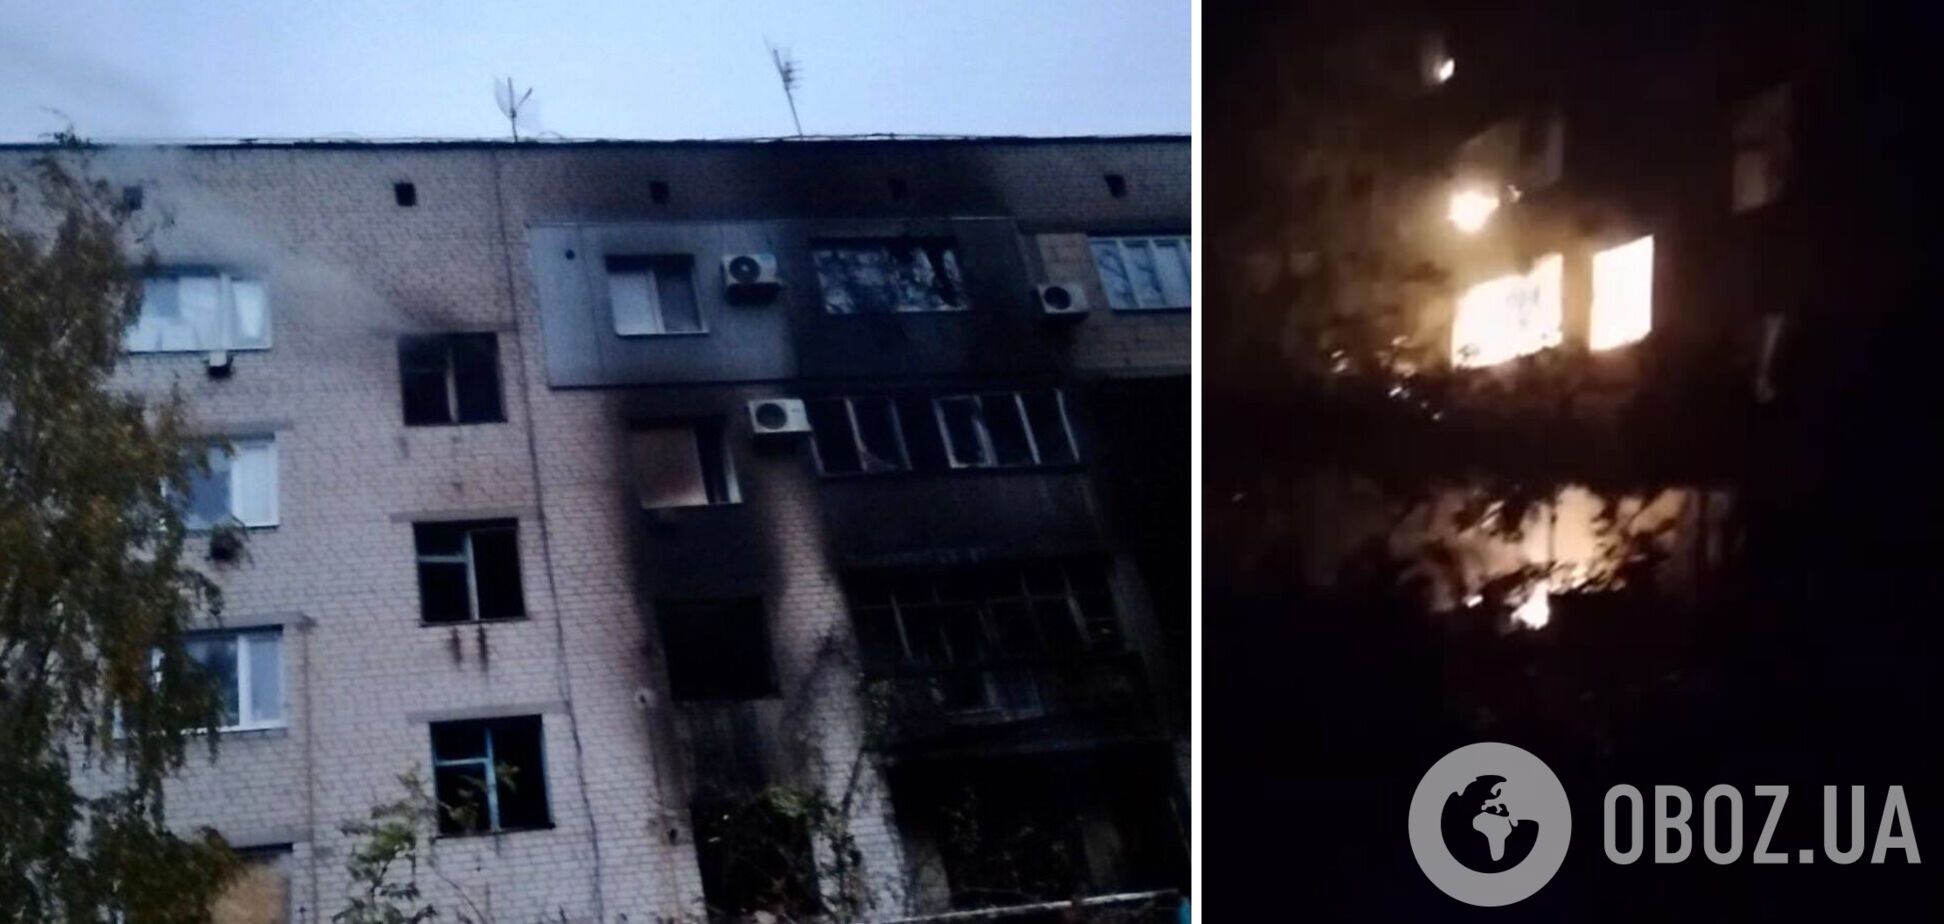 Оккупанты обстреляли Орехов и Преображенку на Запорожье, вспыхнули пожары: два человека погибли. Фото и видео